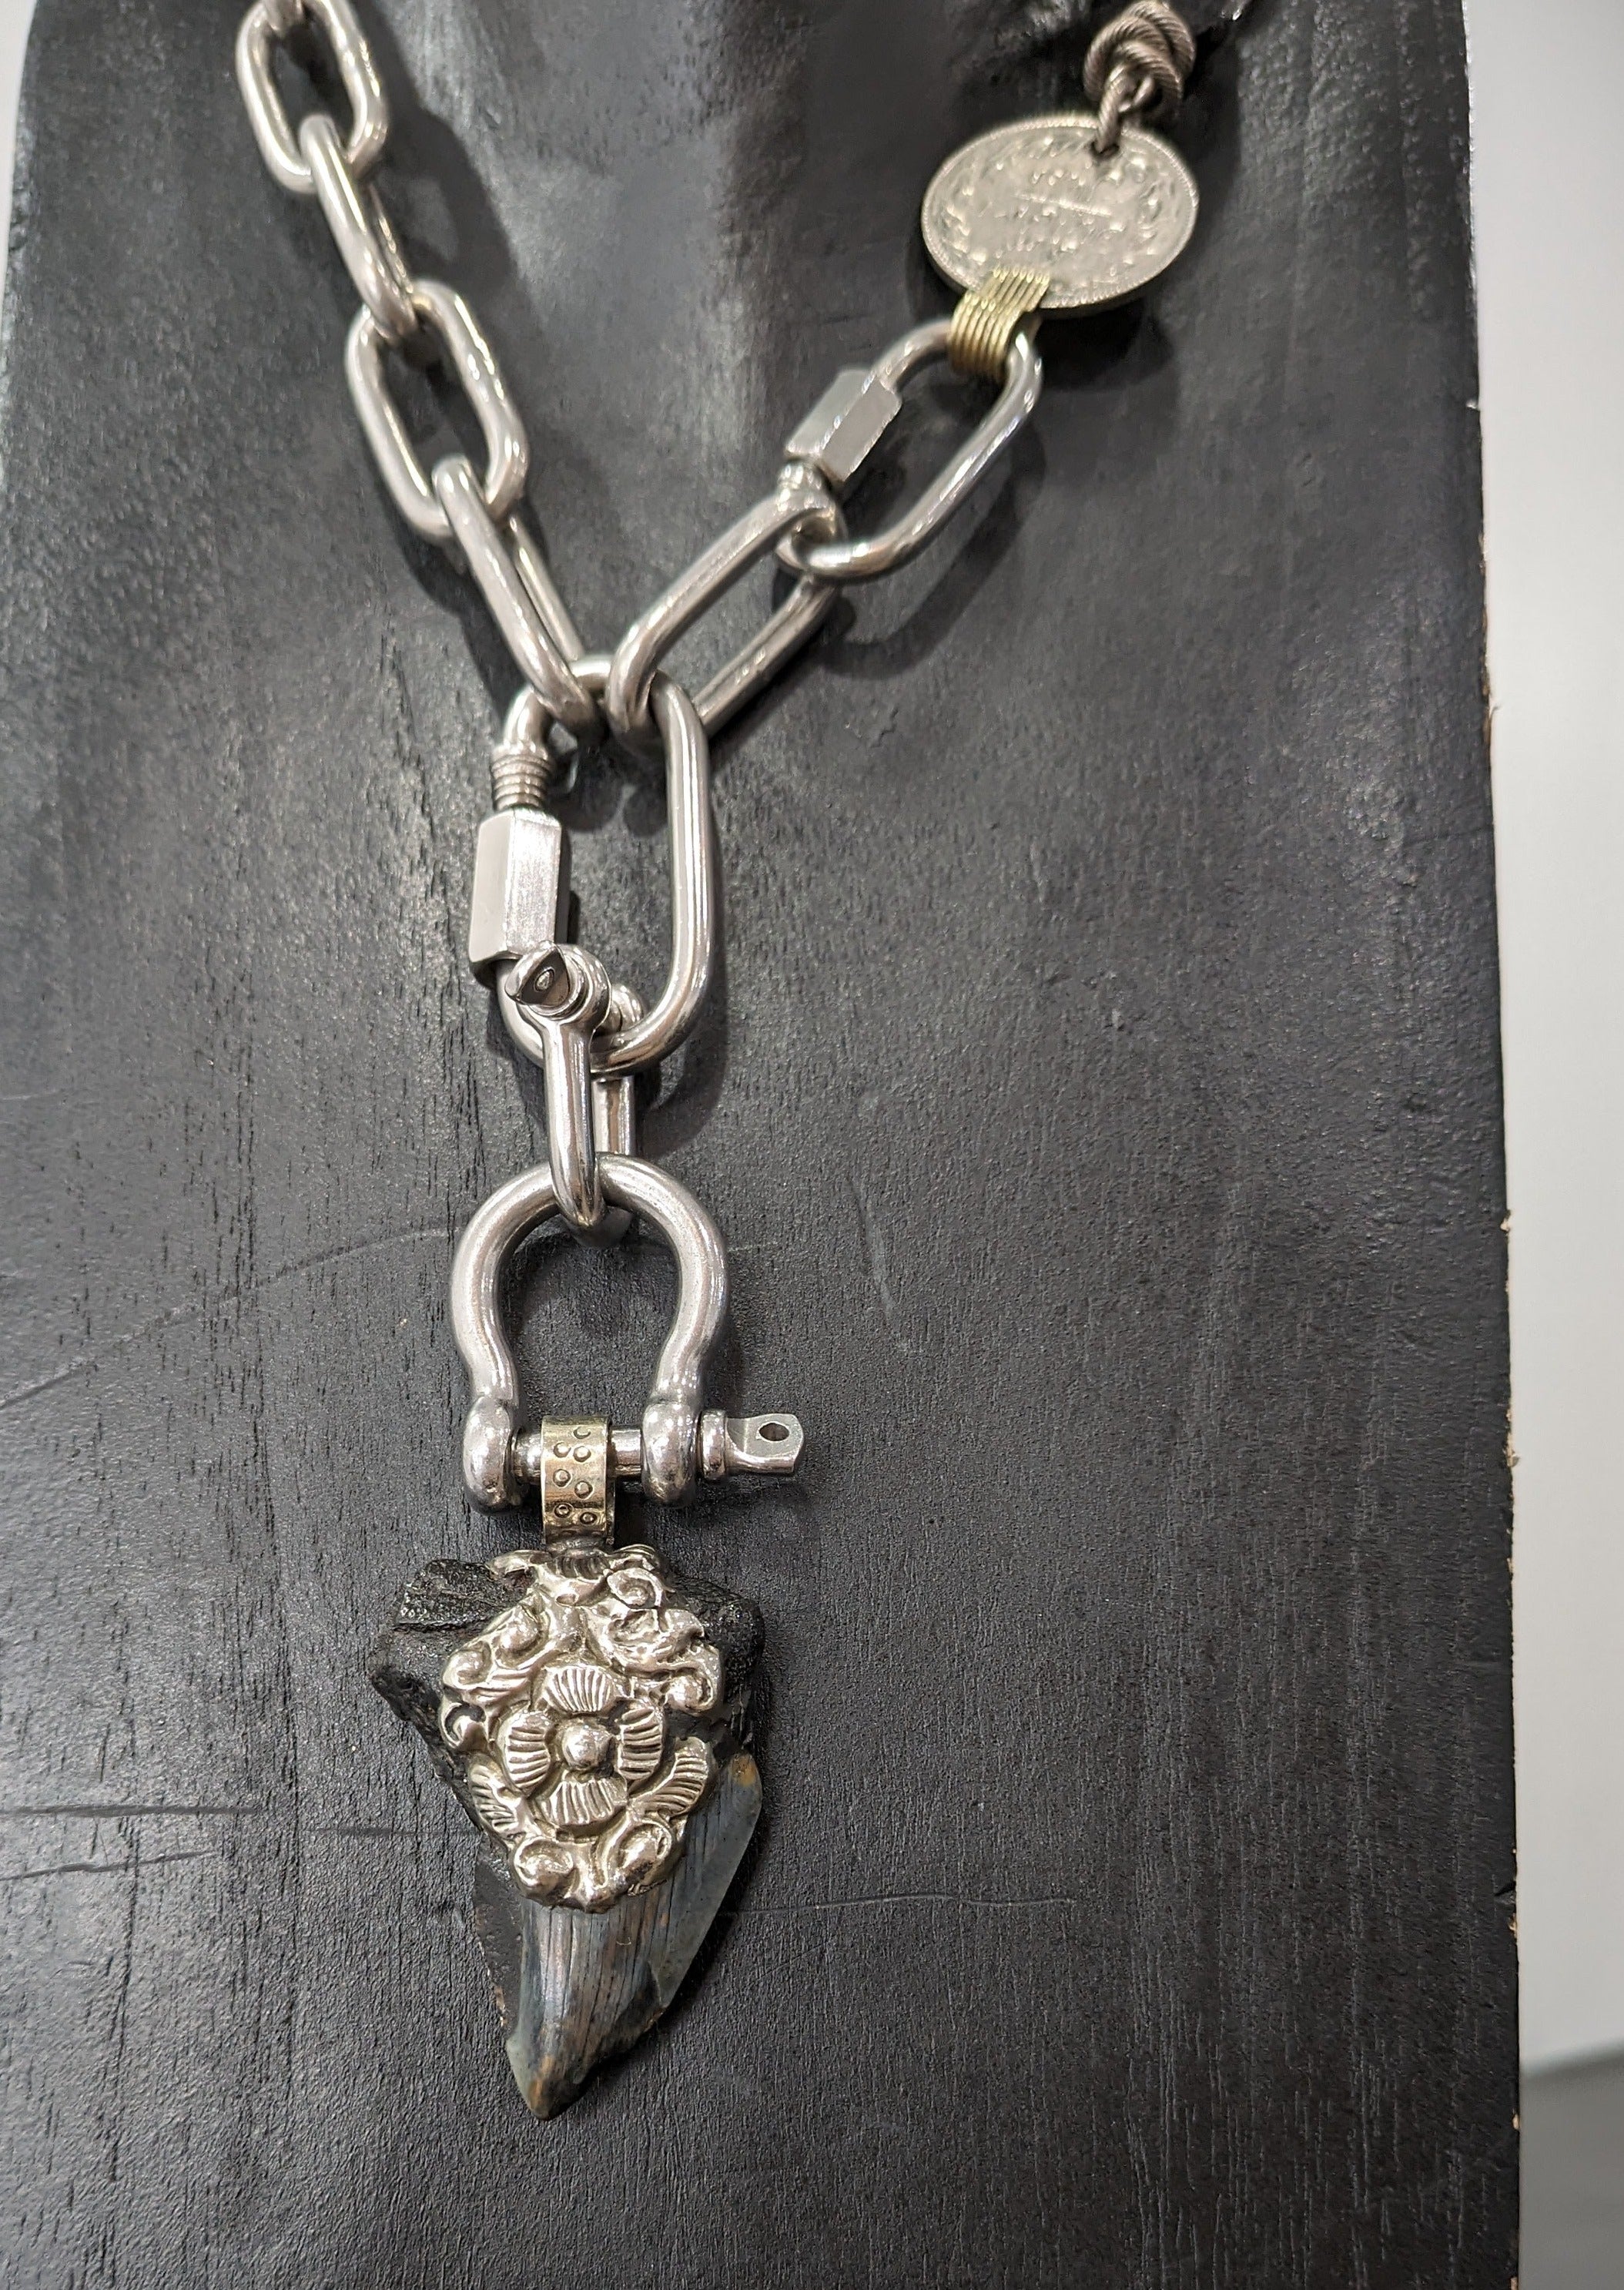 Mya Lambrecht Jewelry - Necklace